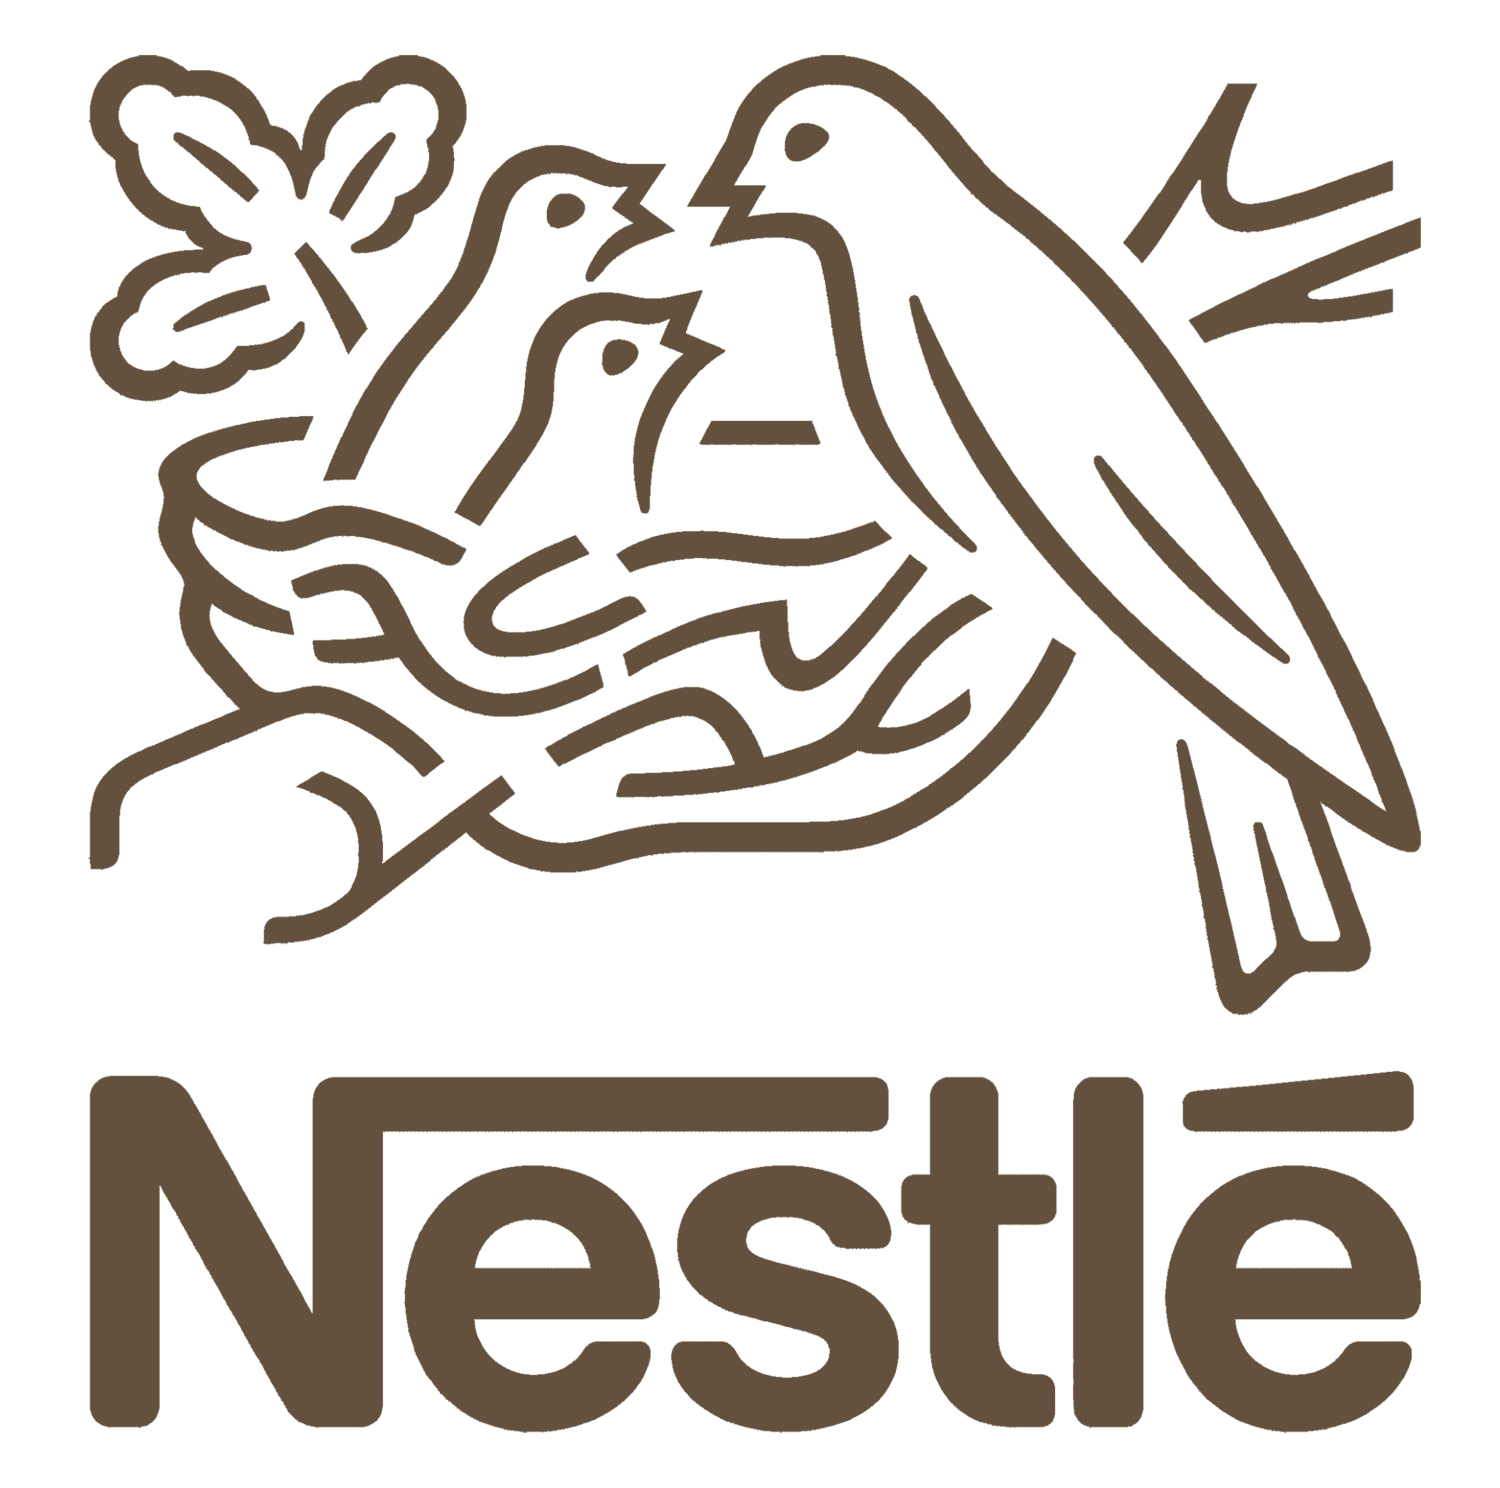 Objavte svet Nestlé | Nestlé Slovensko